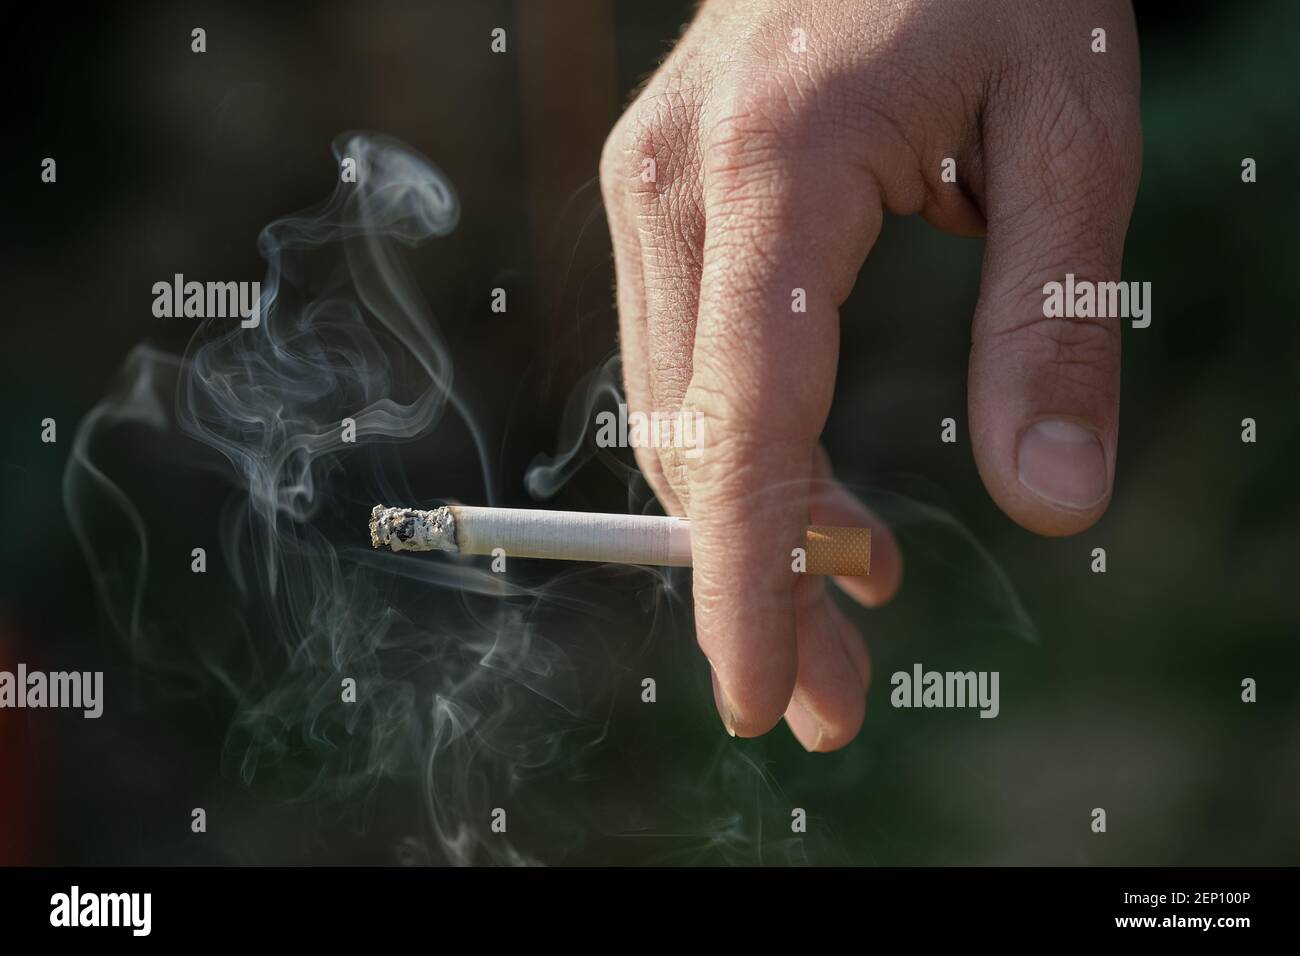 L'uomo tiene la mano che brucia la sigaretta mentre fuma, fumo di tabacco dipendenza, stile di vita malsano Foto Stock